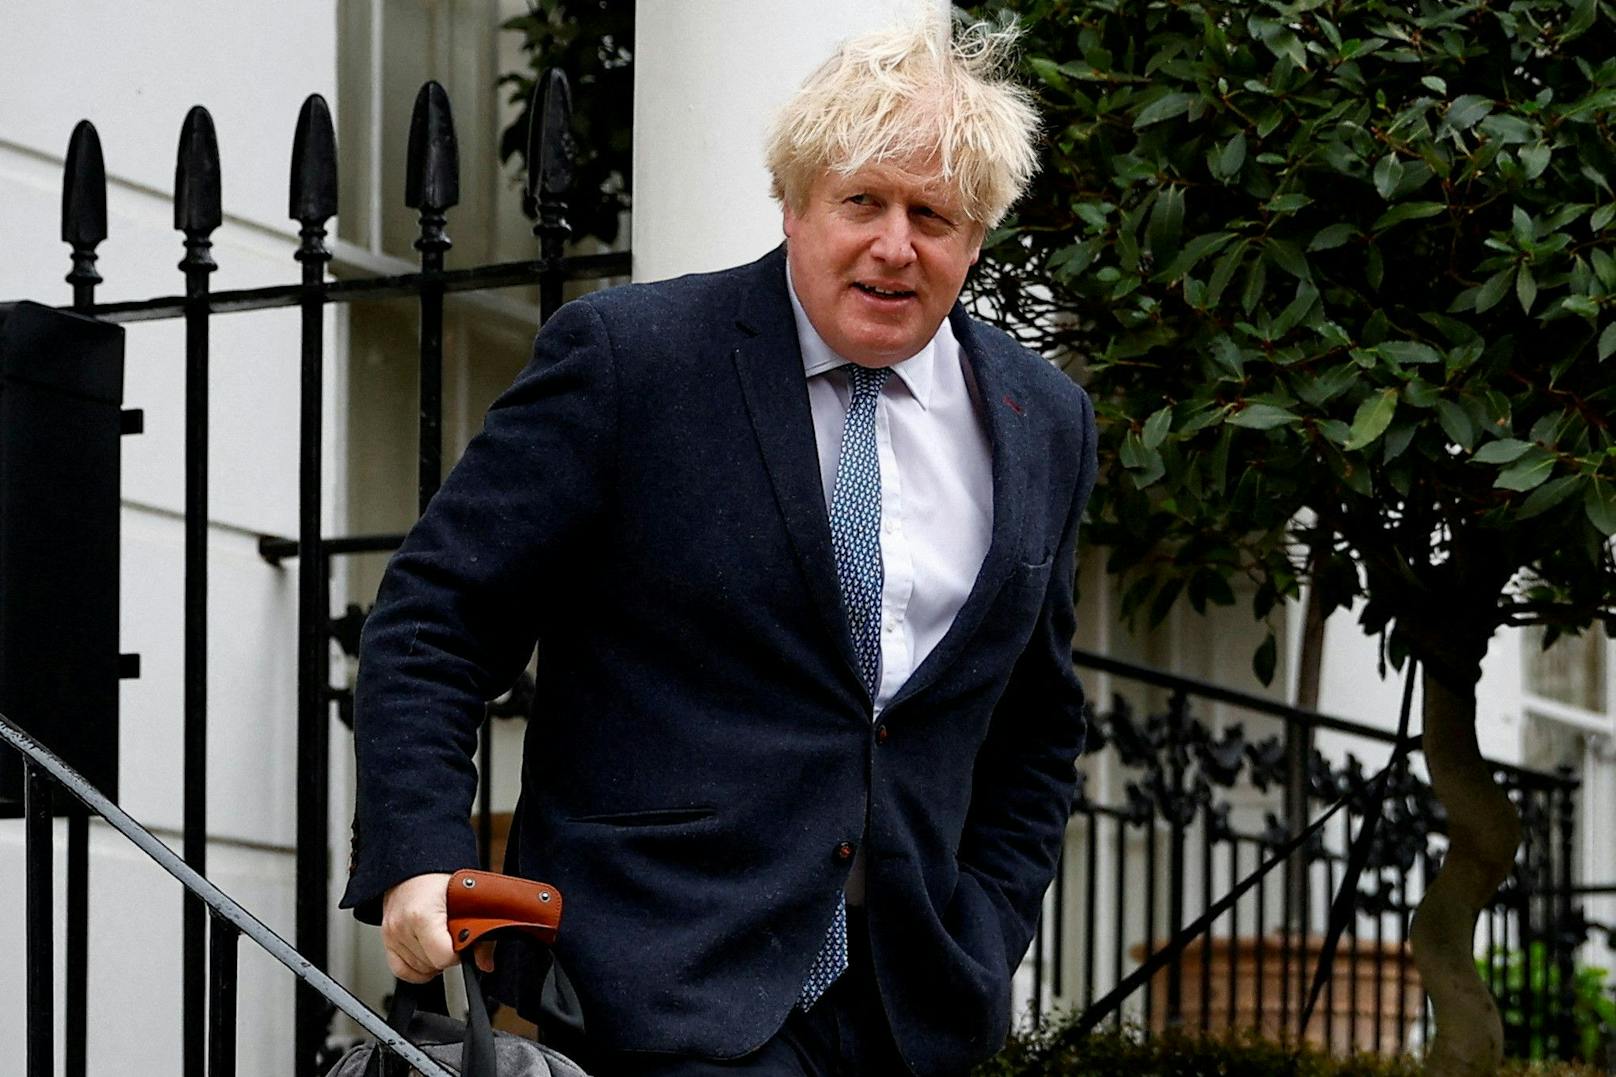 "Partygate" – jetzt tritt Boris Johnson doch zurück